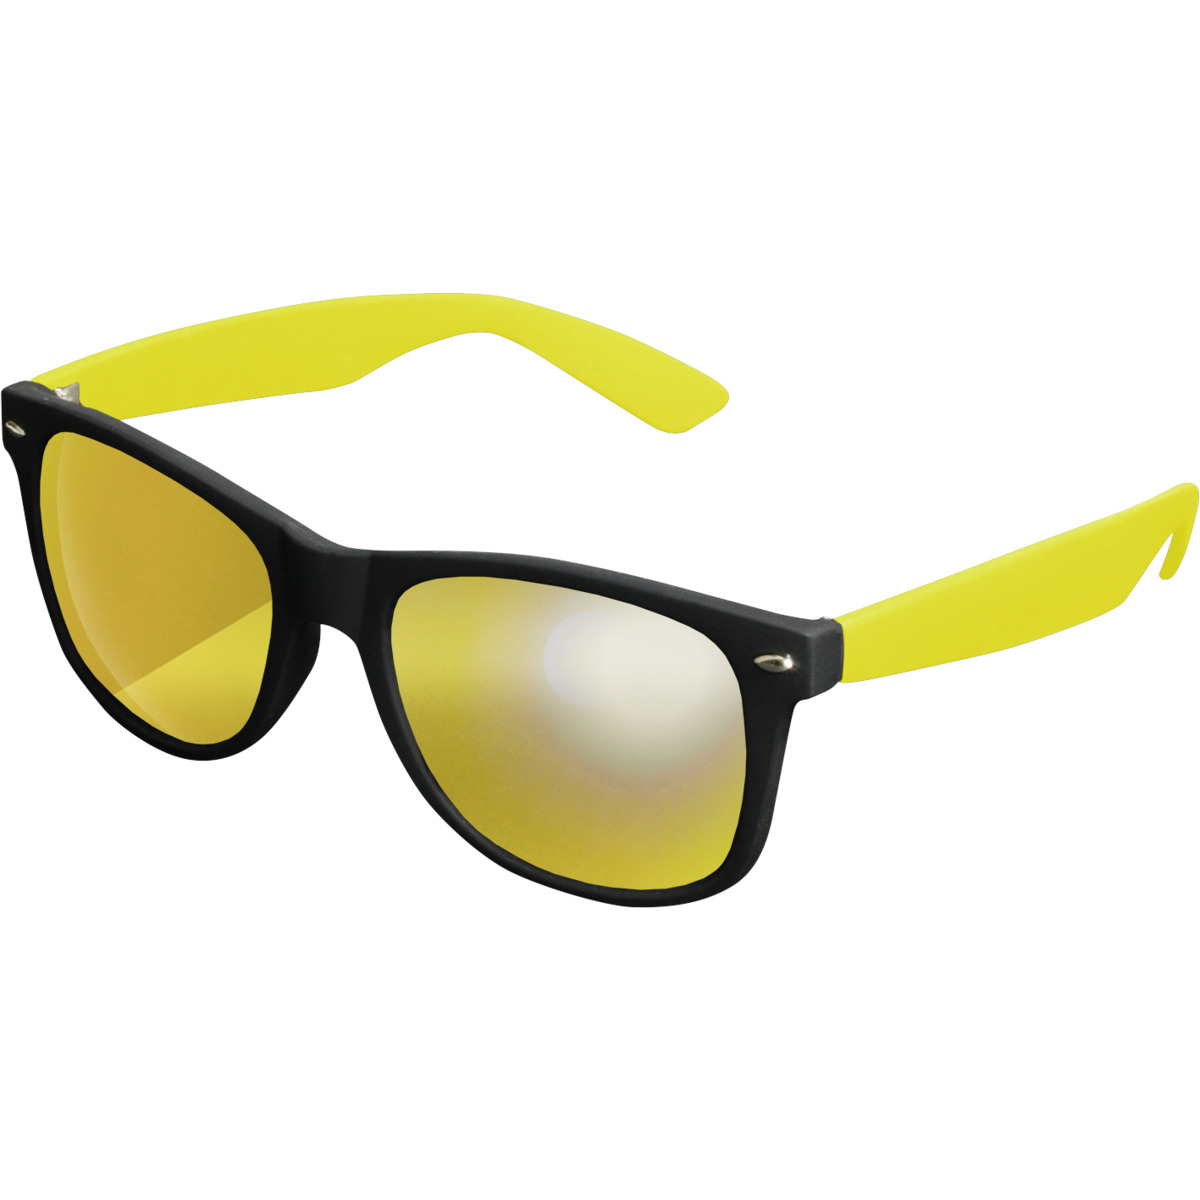 ☆ MasterDis Sonnenbrille Likoma Mirror schwarz/gelb/gelb - hier bestellen!